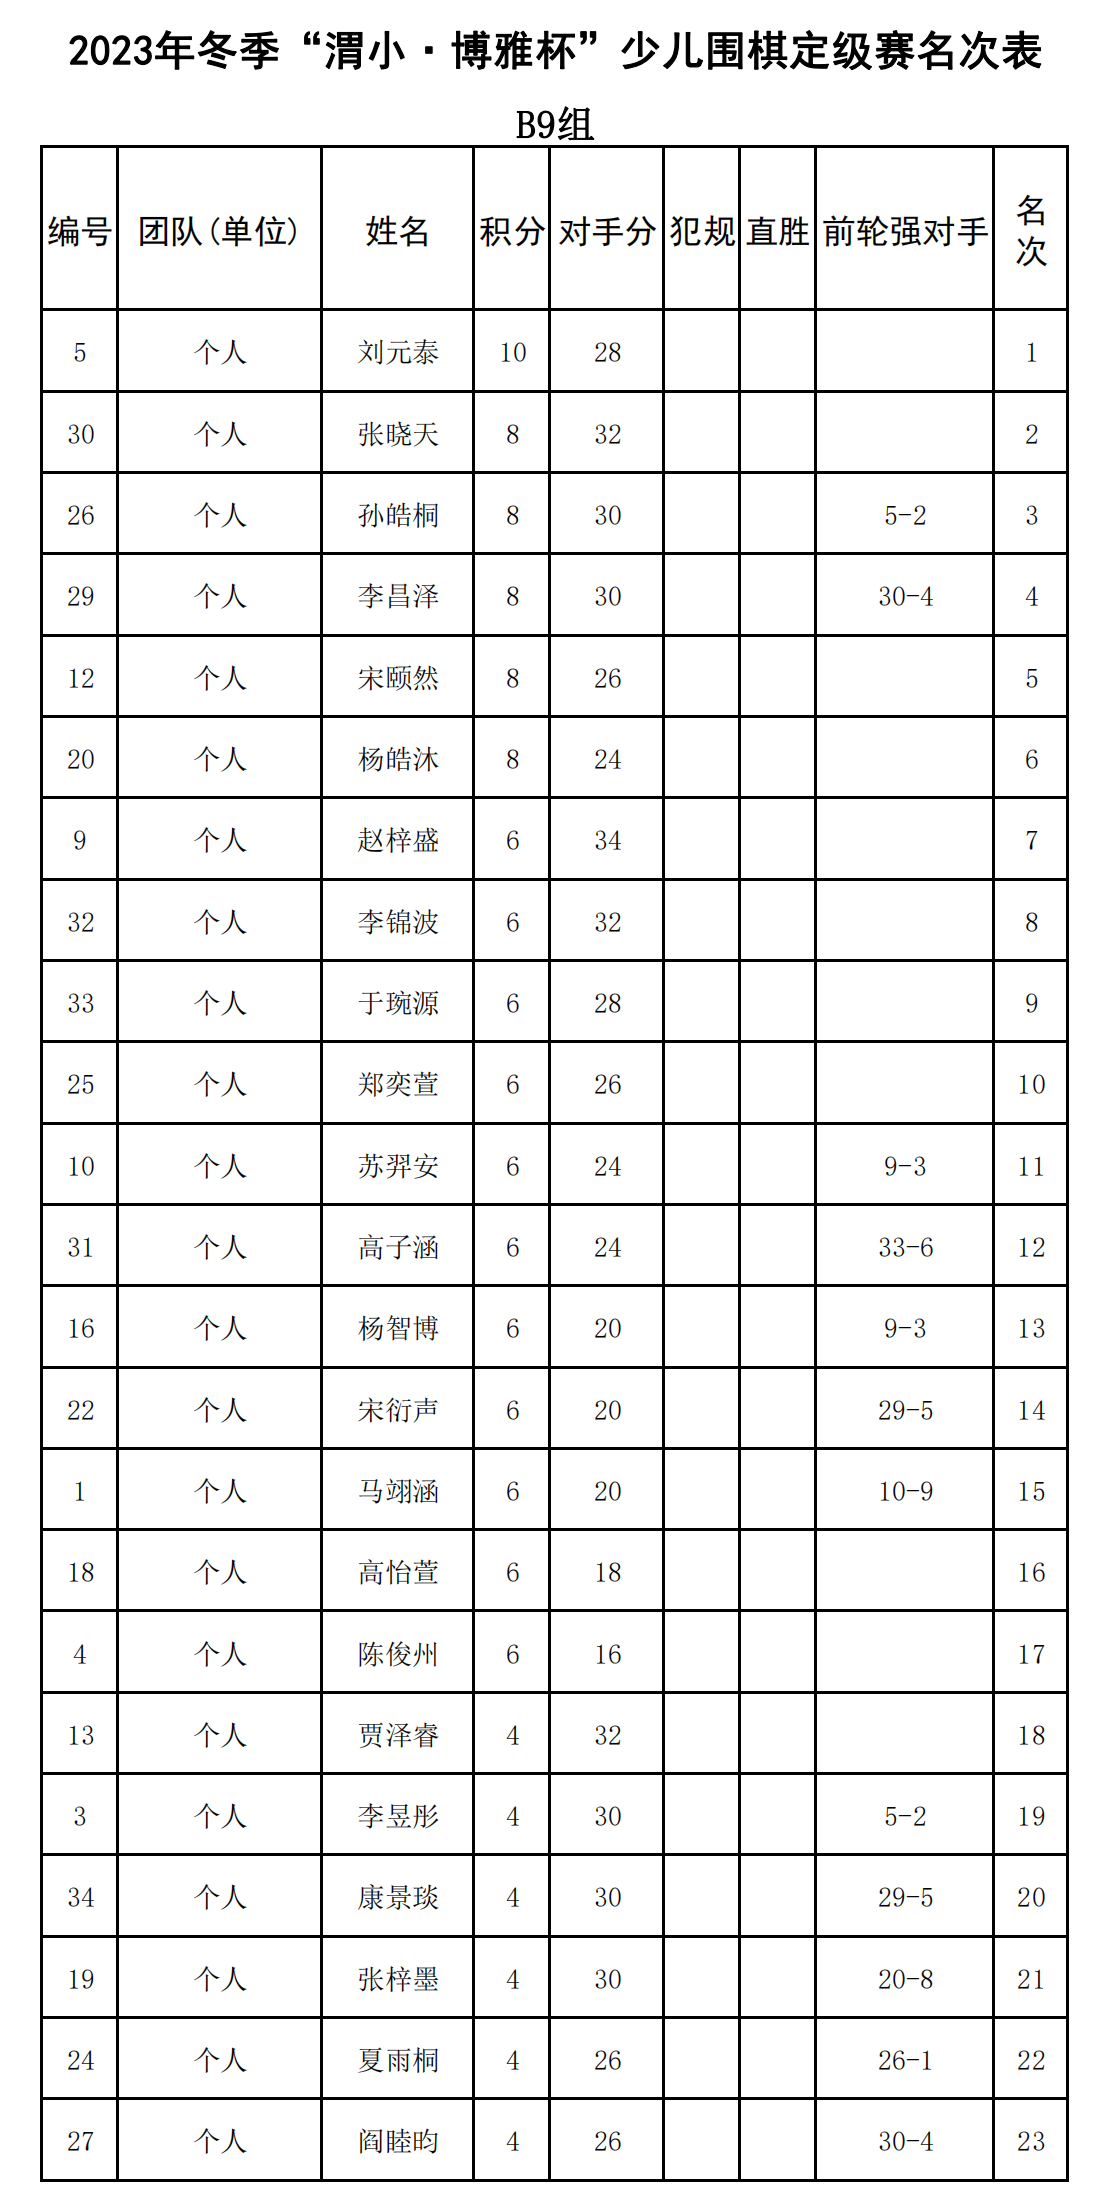 2023年冬季“渭小·博雅杯”少儿围棋定级赛B9组(名次表)_00.png